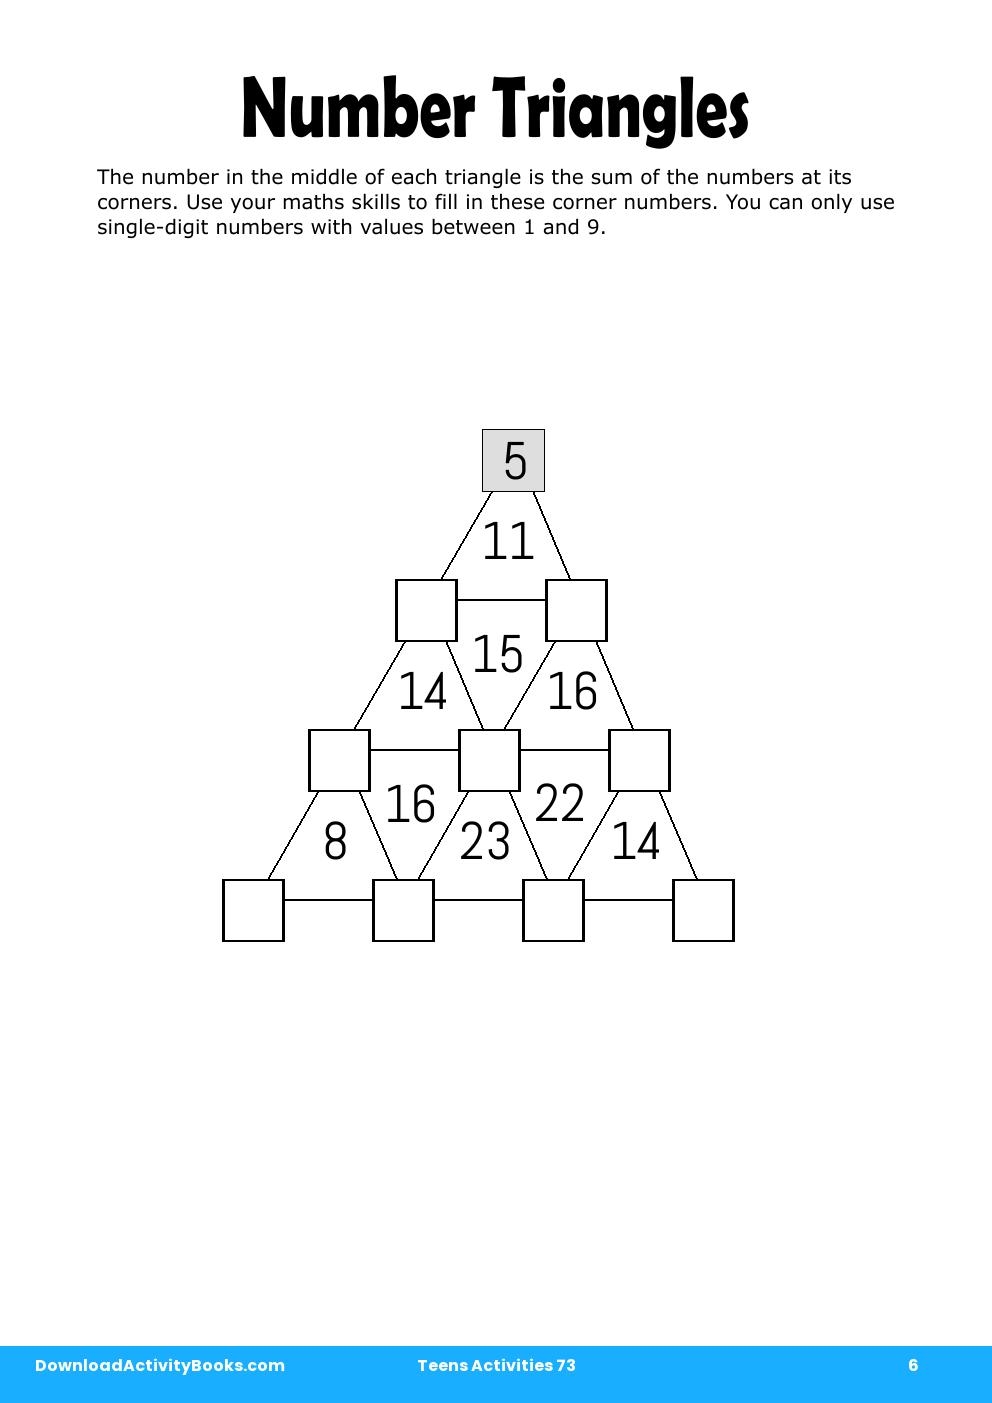 Number Triangles in Teens Activities 73